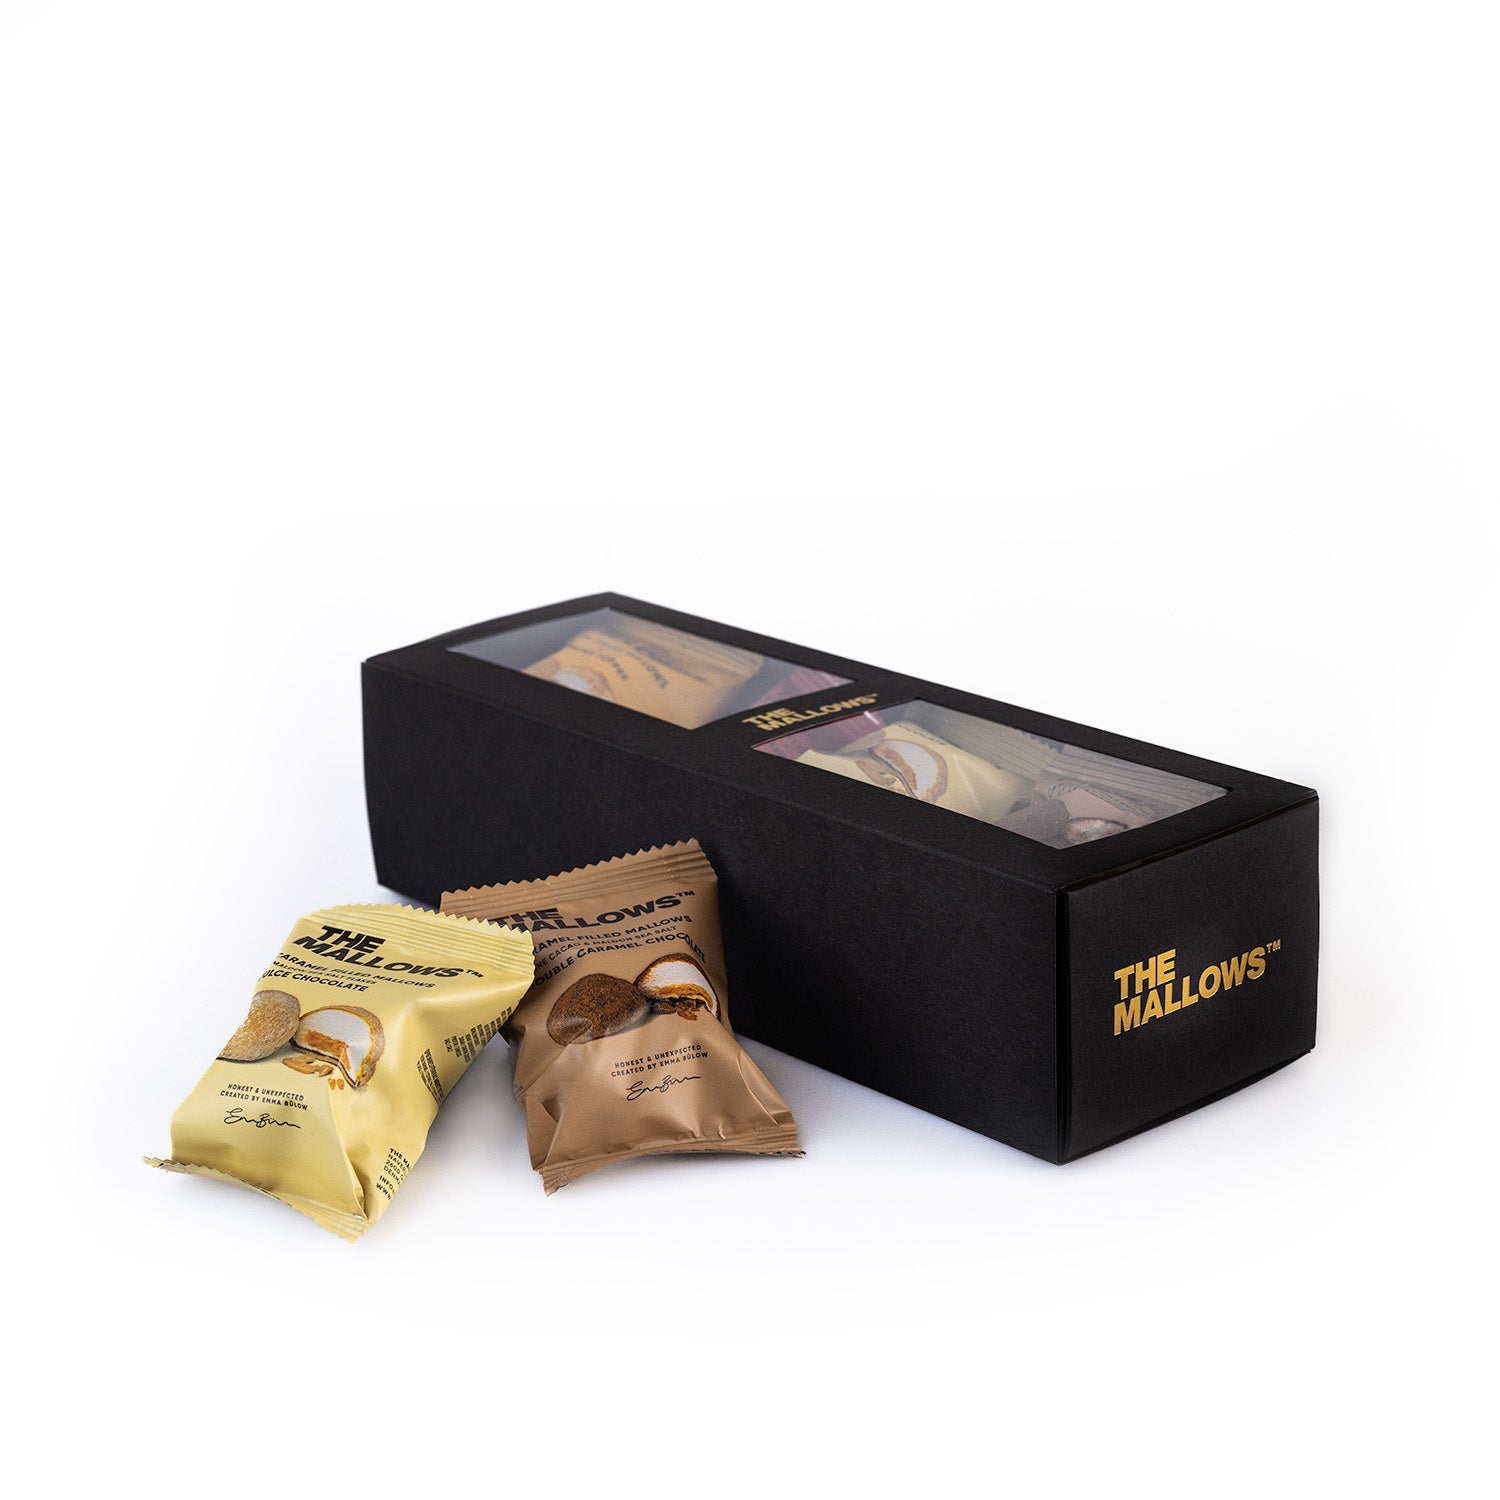 The Mallows Boîte-cadeau remplie de guimauves au caramel, 116g